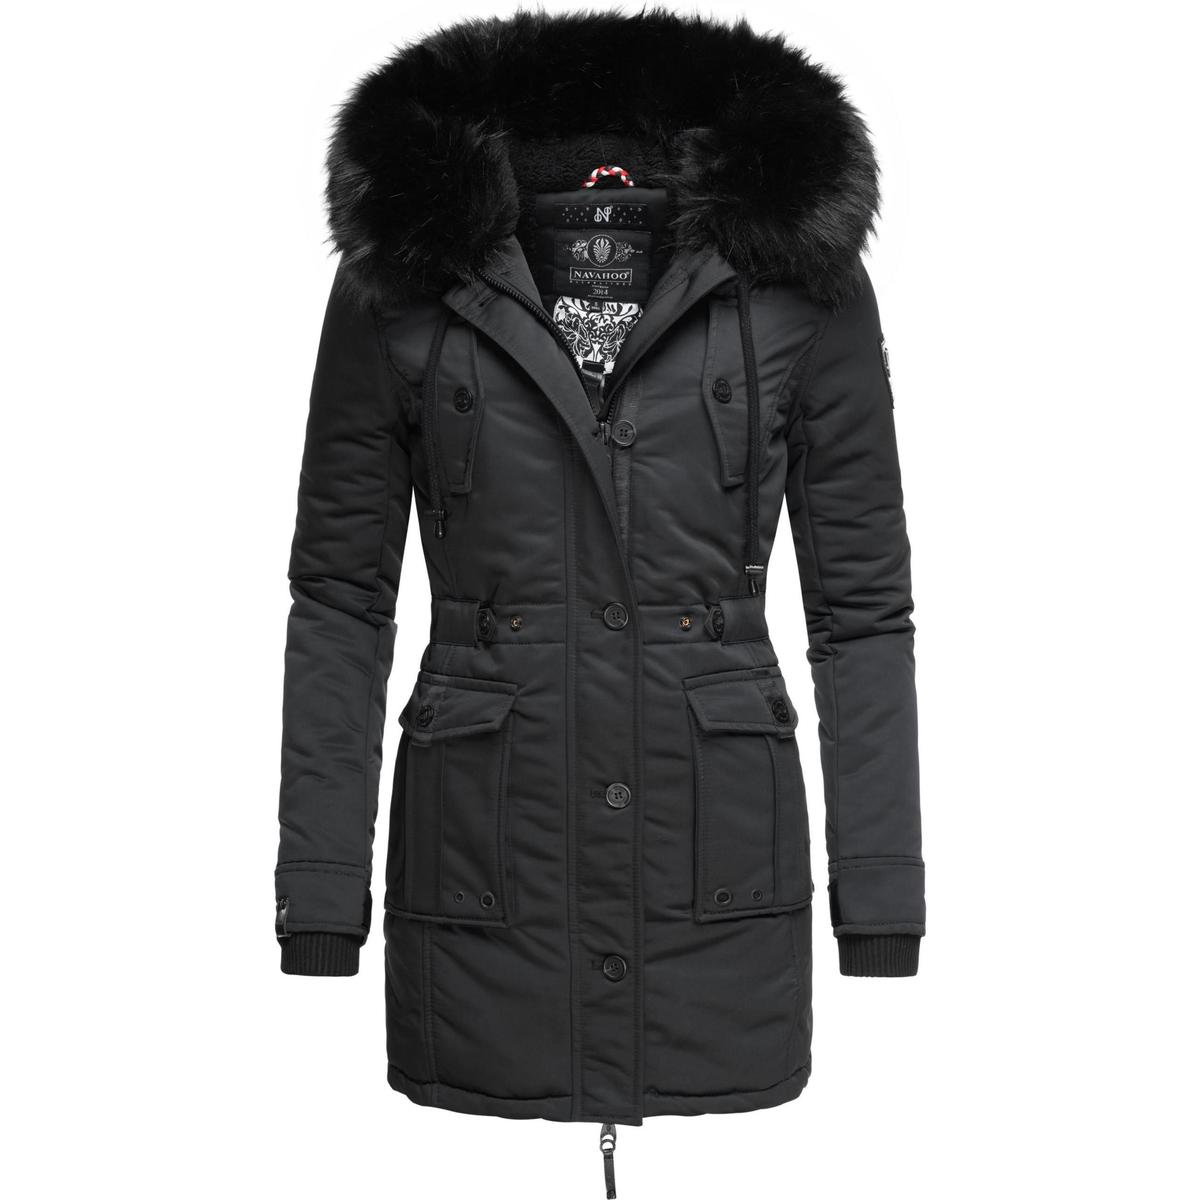 Weitere Preissenkungen! Navahoo Wintermantel Luluna Prc Schwarz Kleidung Mäntel - Damen € 134,95